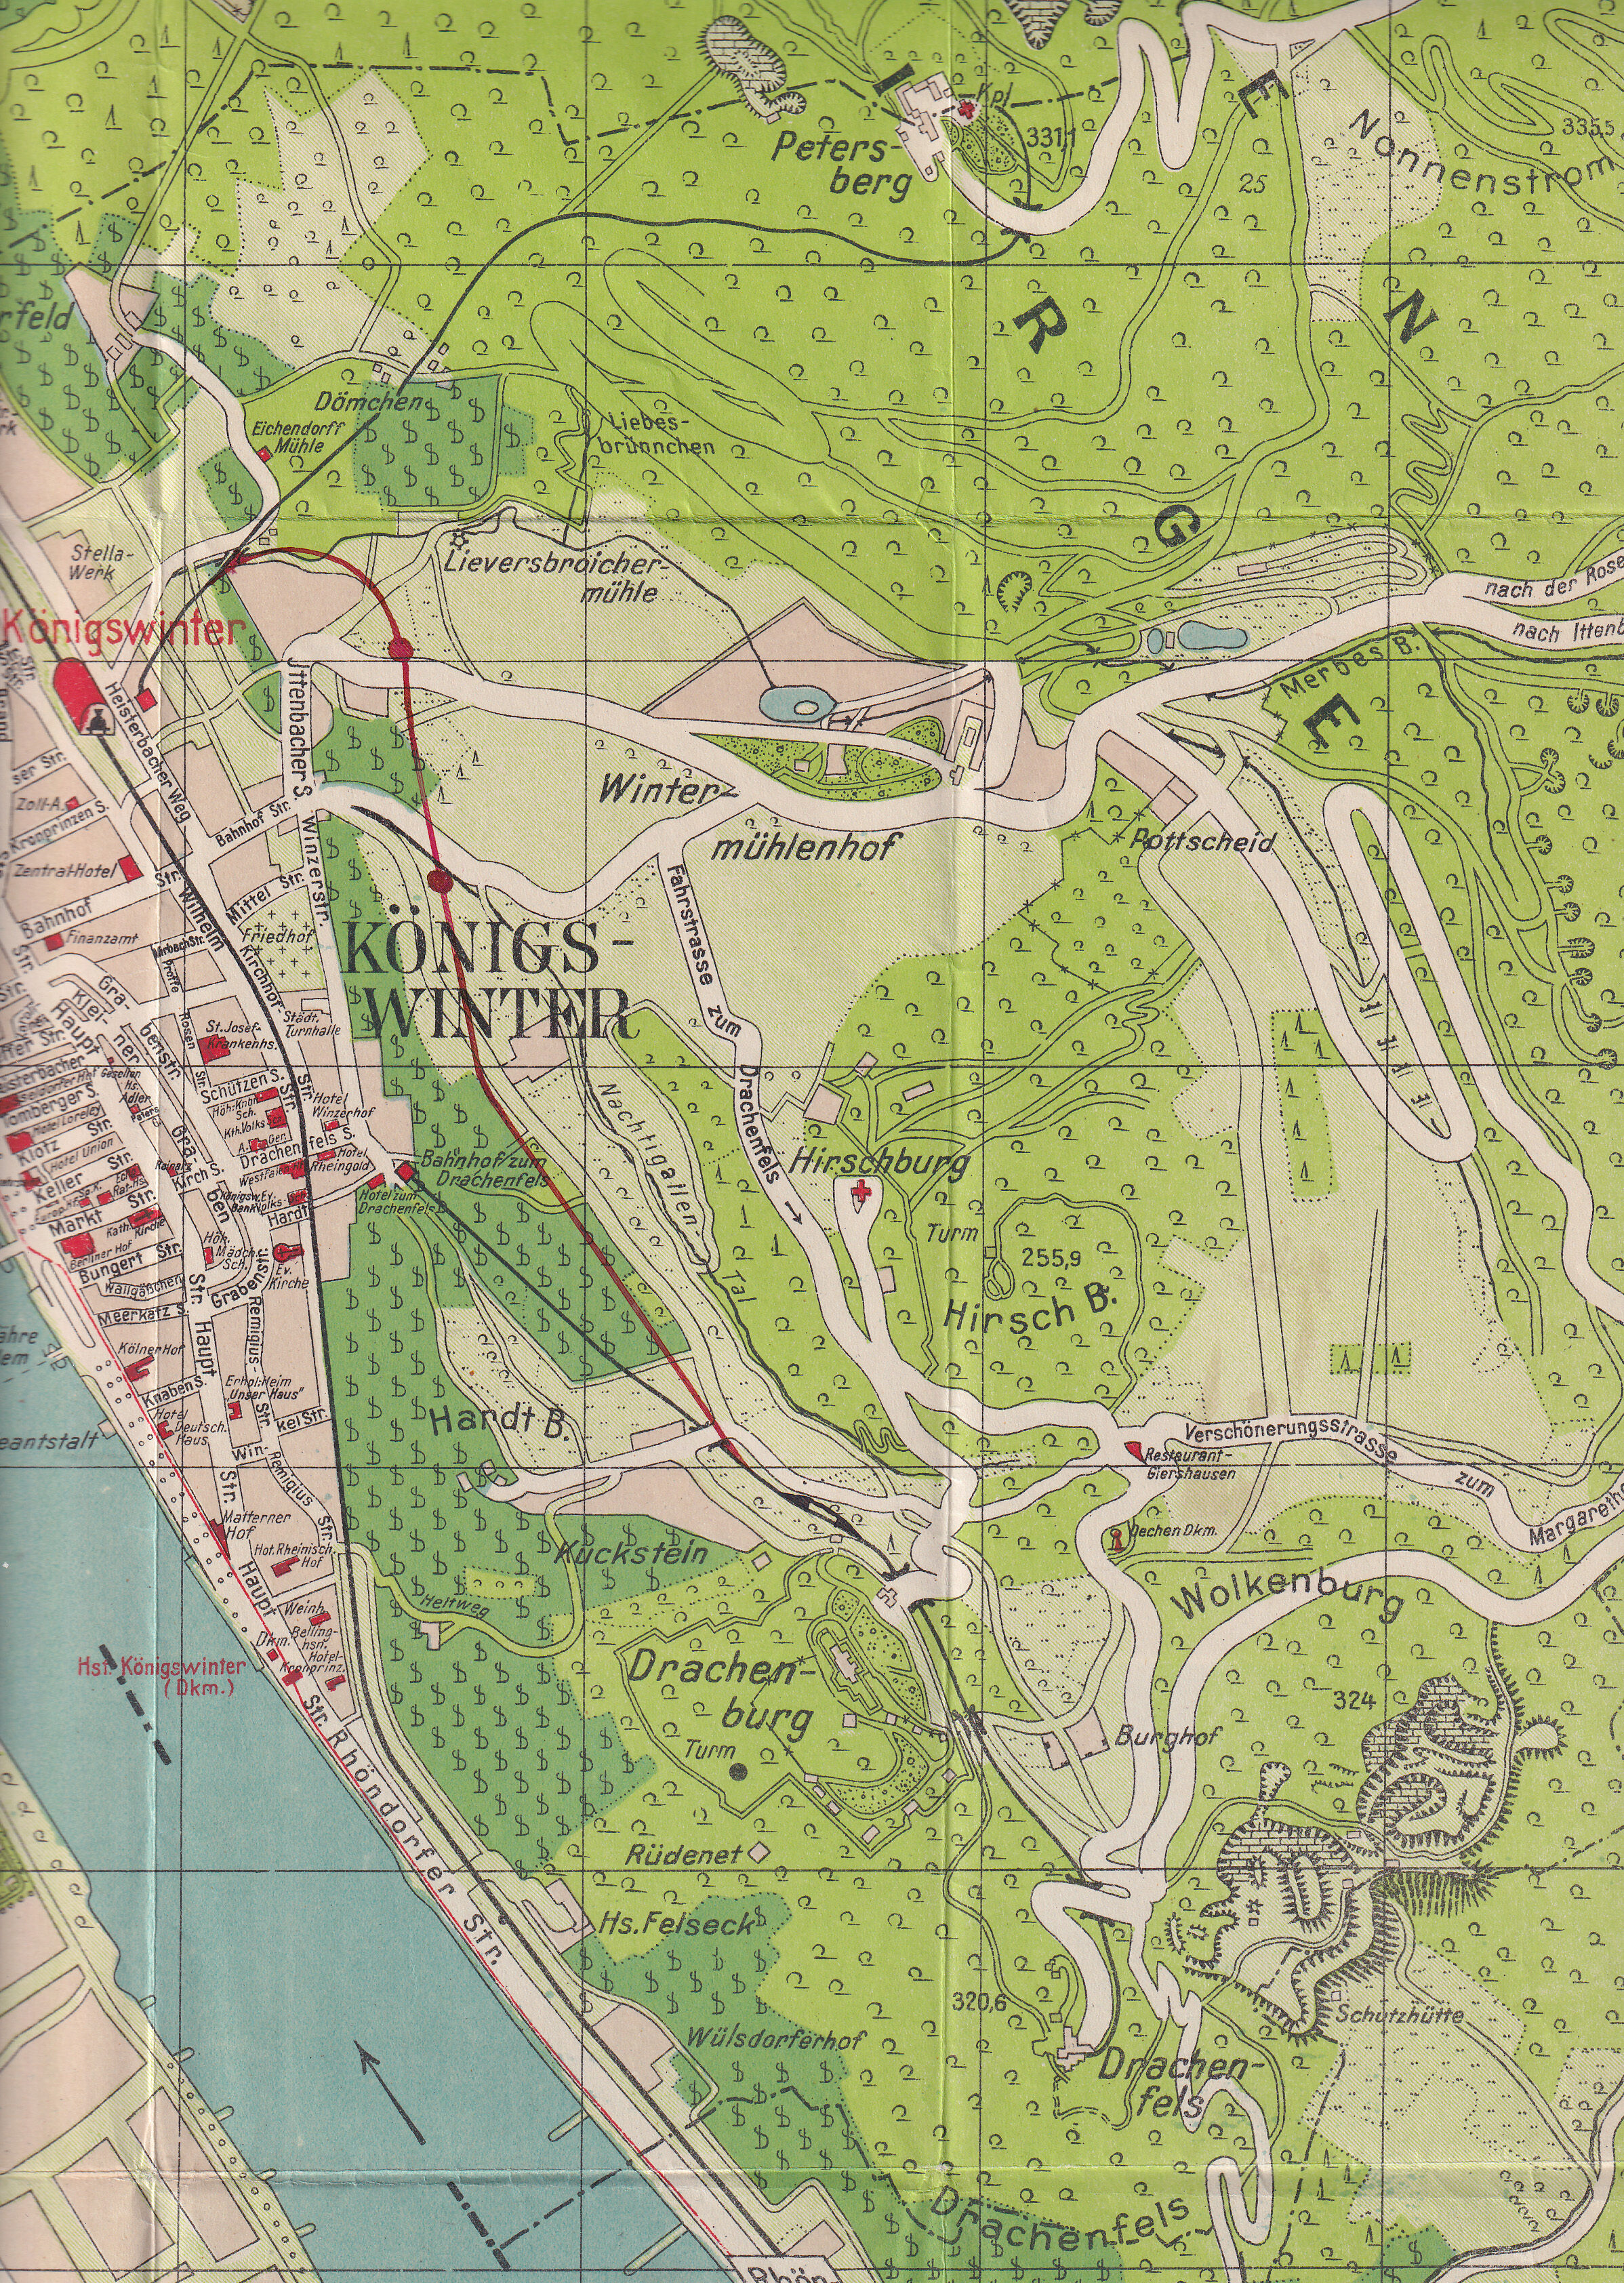 VERBINDUNGSPLAN (ca. 1926) Um von der Beliebtheit des Drachenfelsens zu profitieren, kam es zu Planungen, beide Bergbahnen mit einem Gleis zu verbinden. 1898 war eine gemeinsame Talstation vorgesehen, in den 1920er-Jahren nicht mehr. Es blieb bei den Planungen.